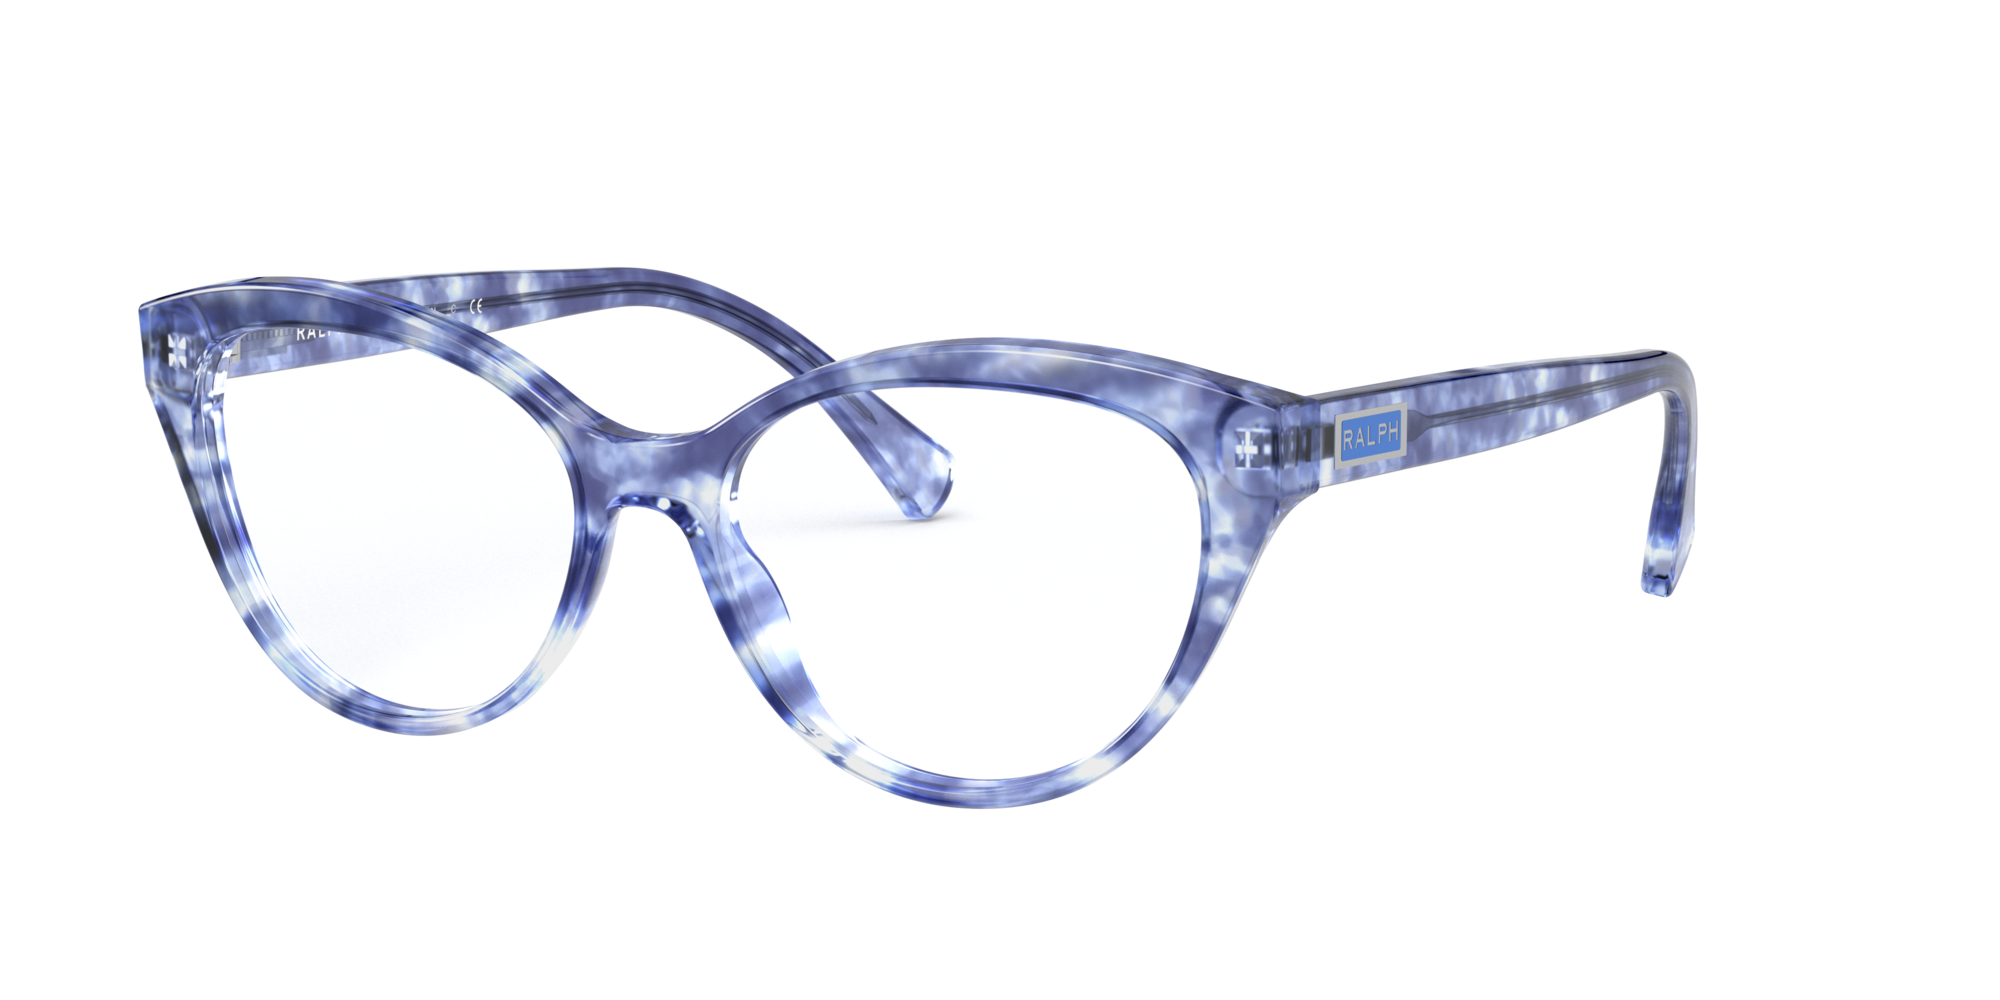 ralph lauren glasses tortoise shell blue